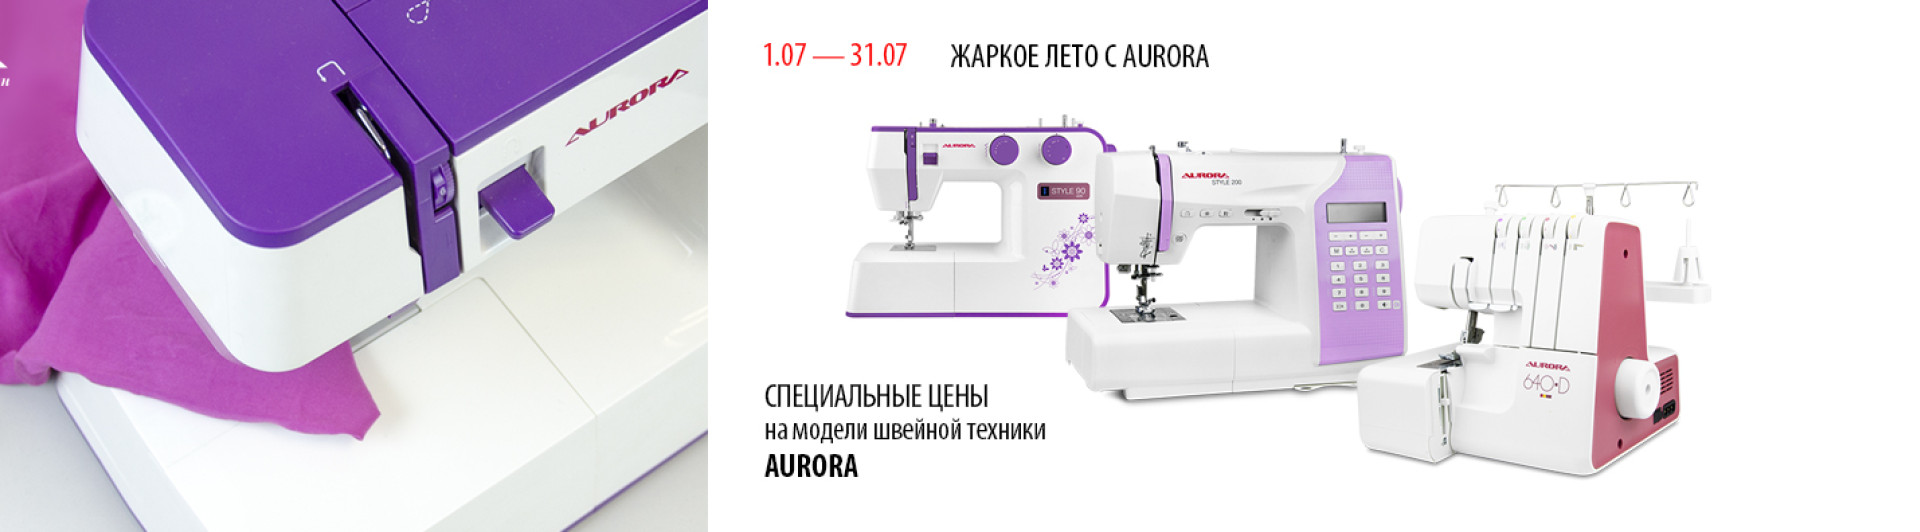 С 1 по 31 июля скидки на швейную технику Aurora